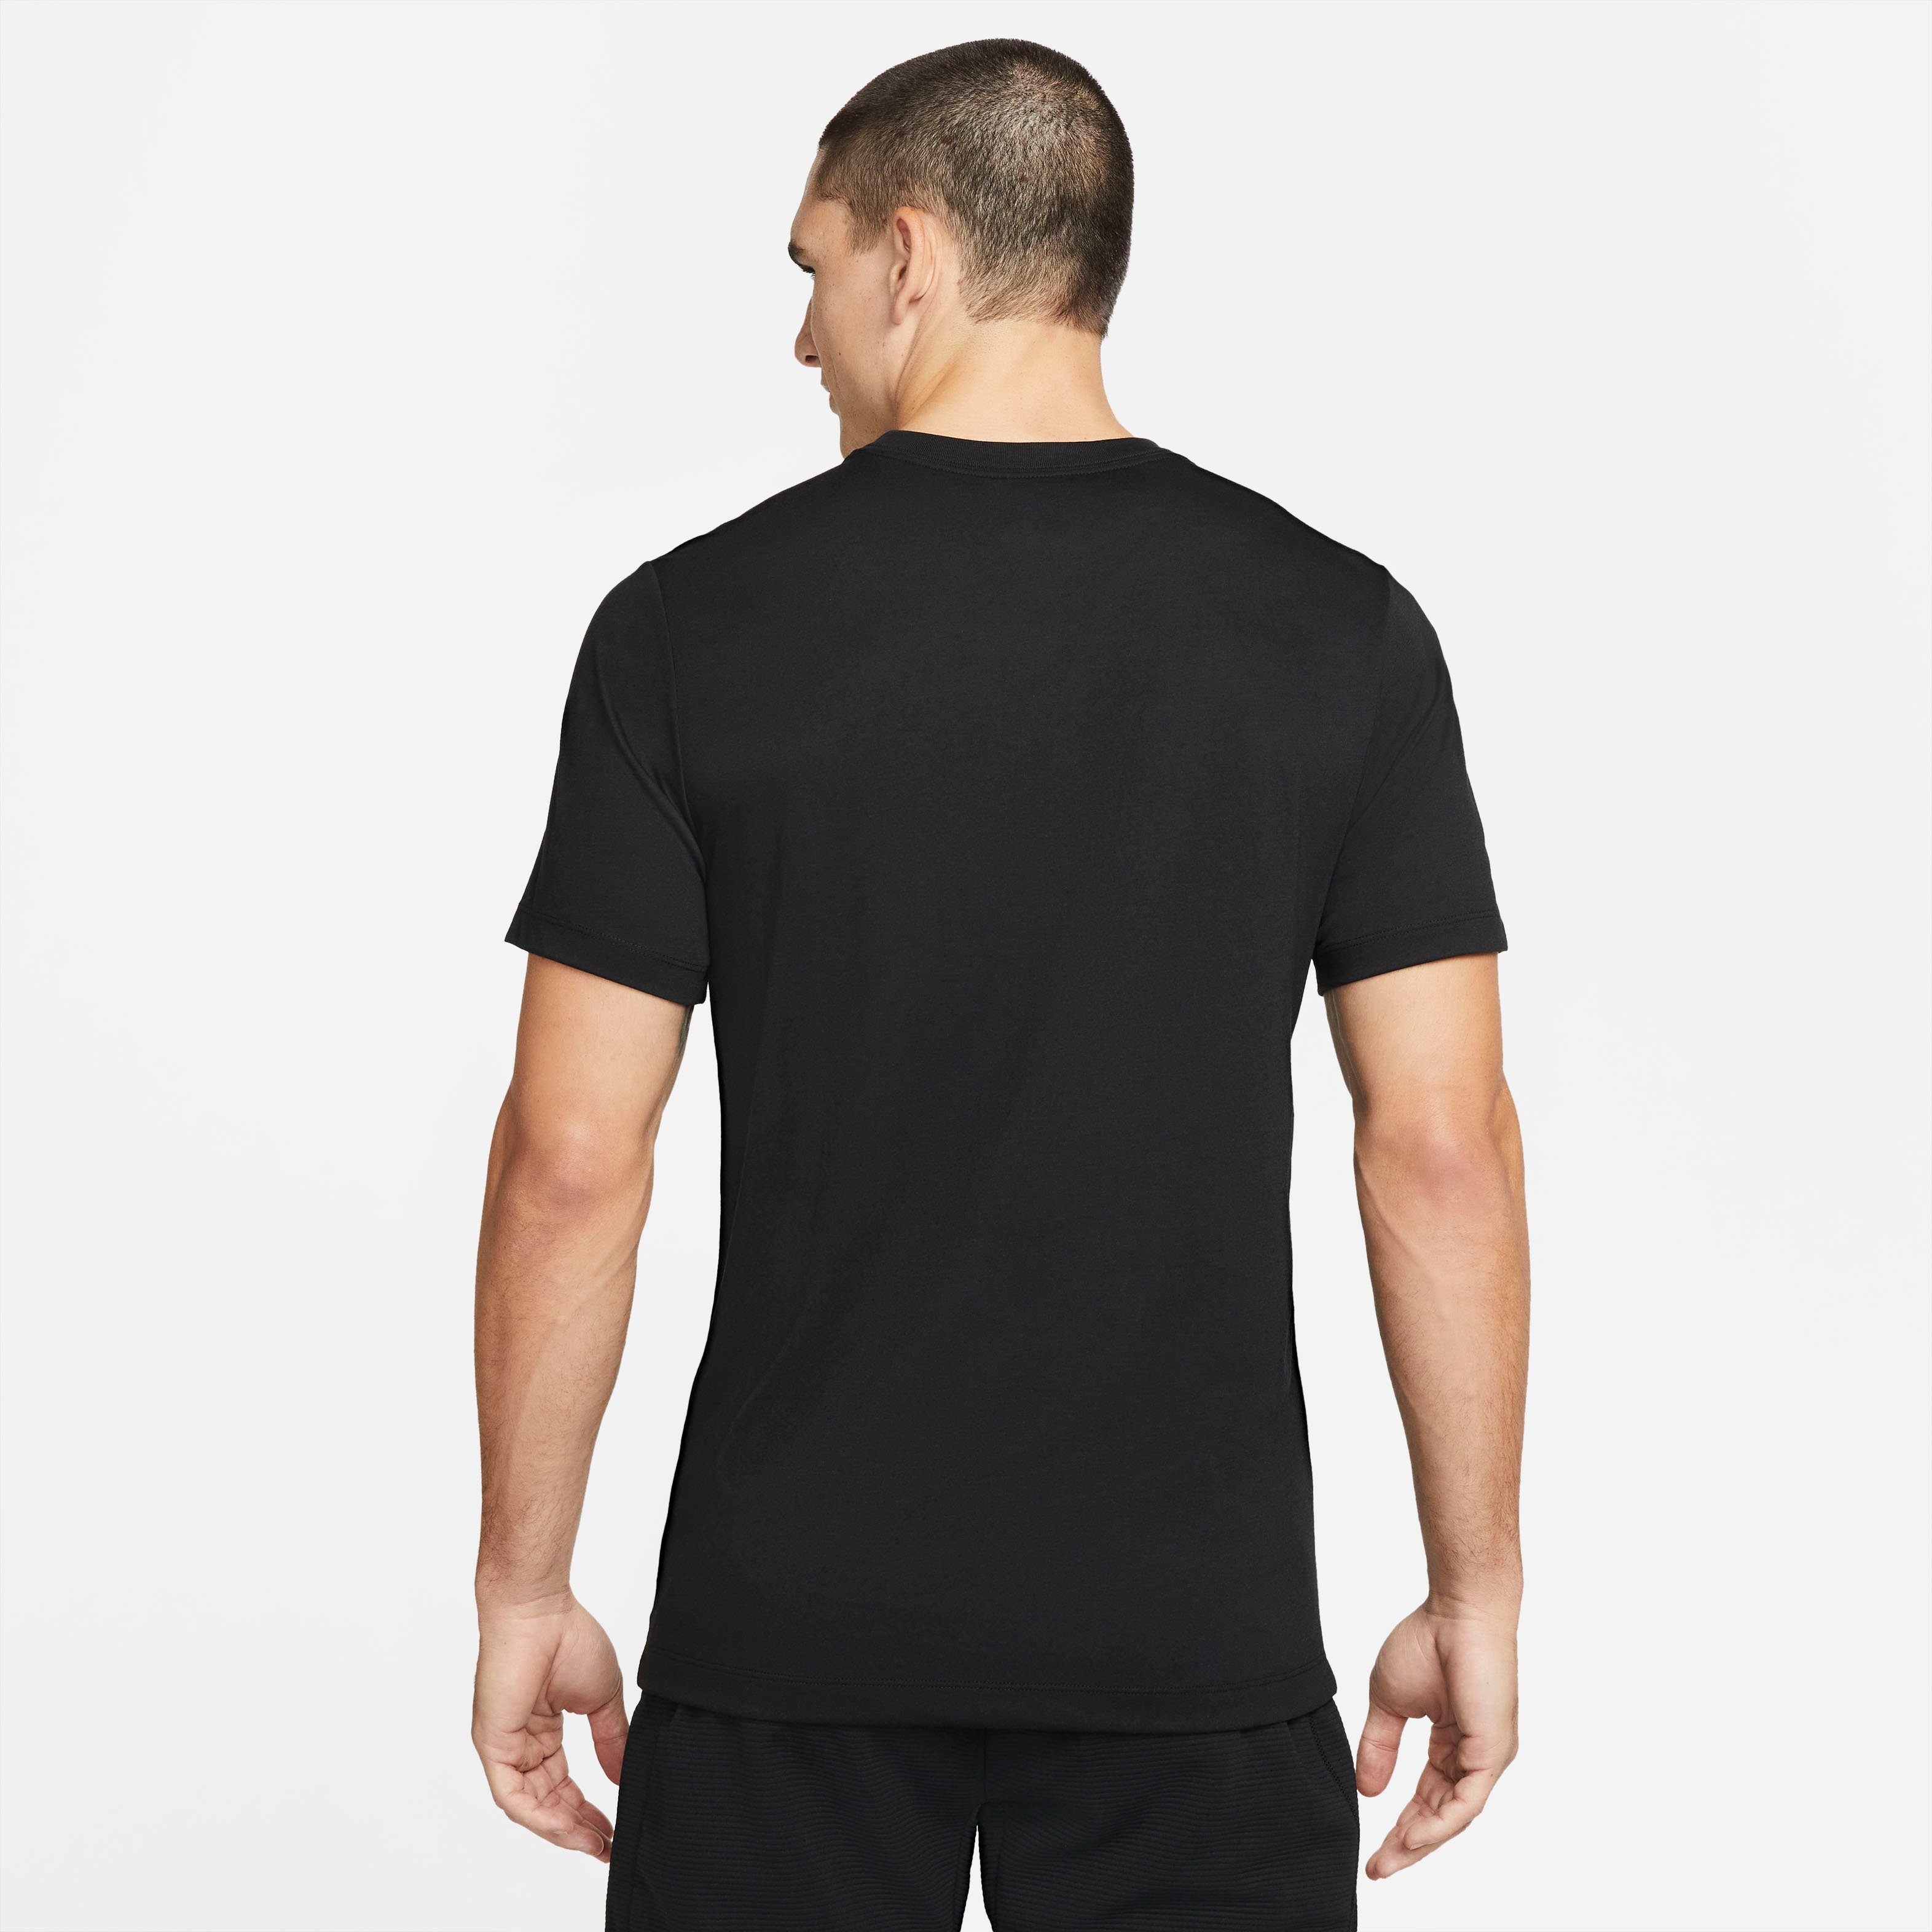 Nike Trainingsshirt Men's BLACK Dri-FIT Training Pro T-Shirt